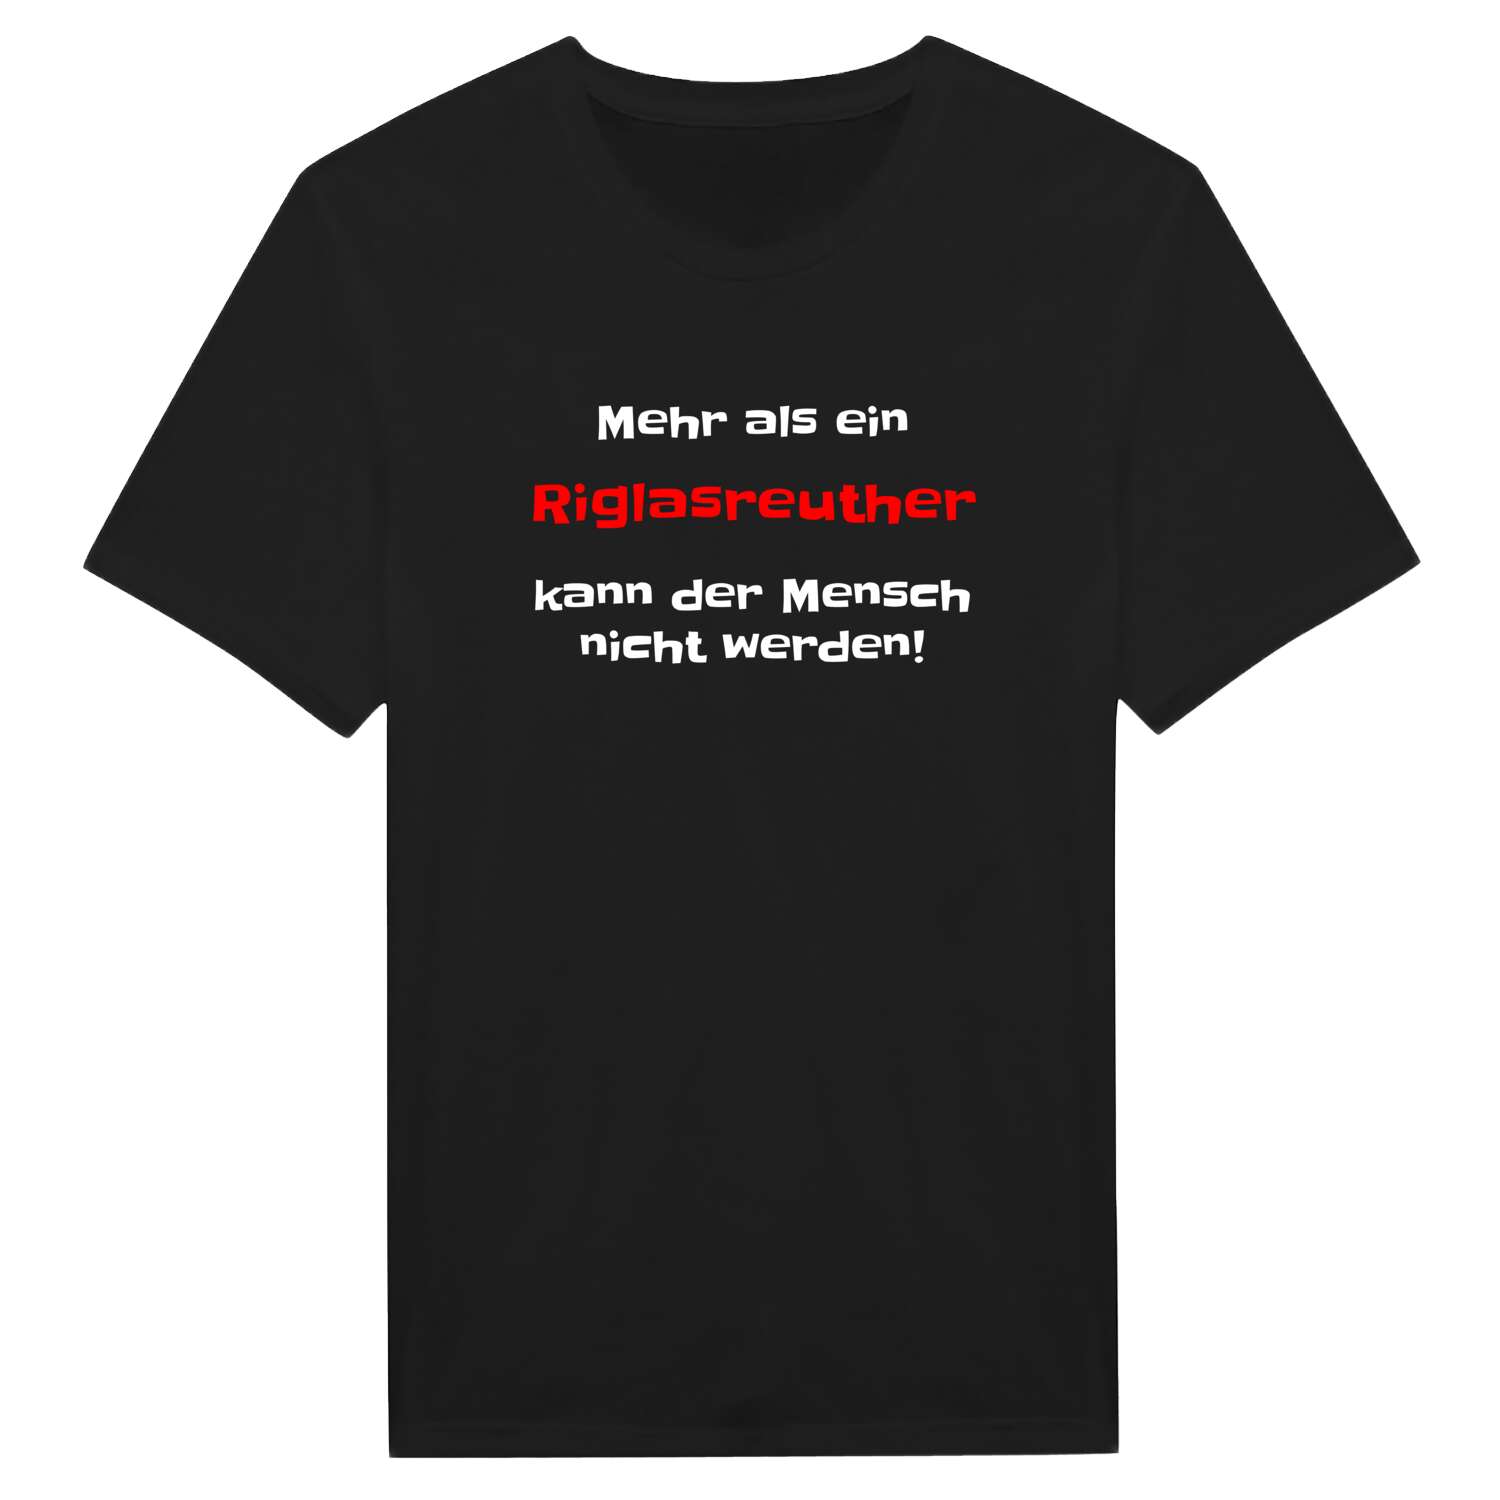 Riglasreuth T-Shirt »Mehr als ein«